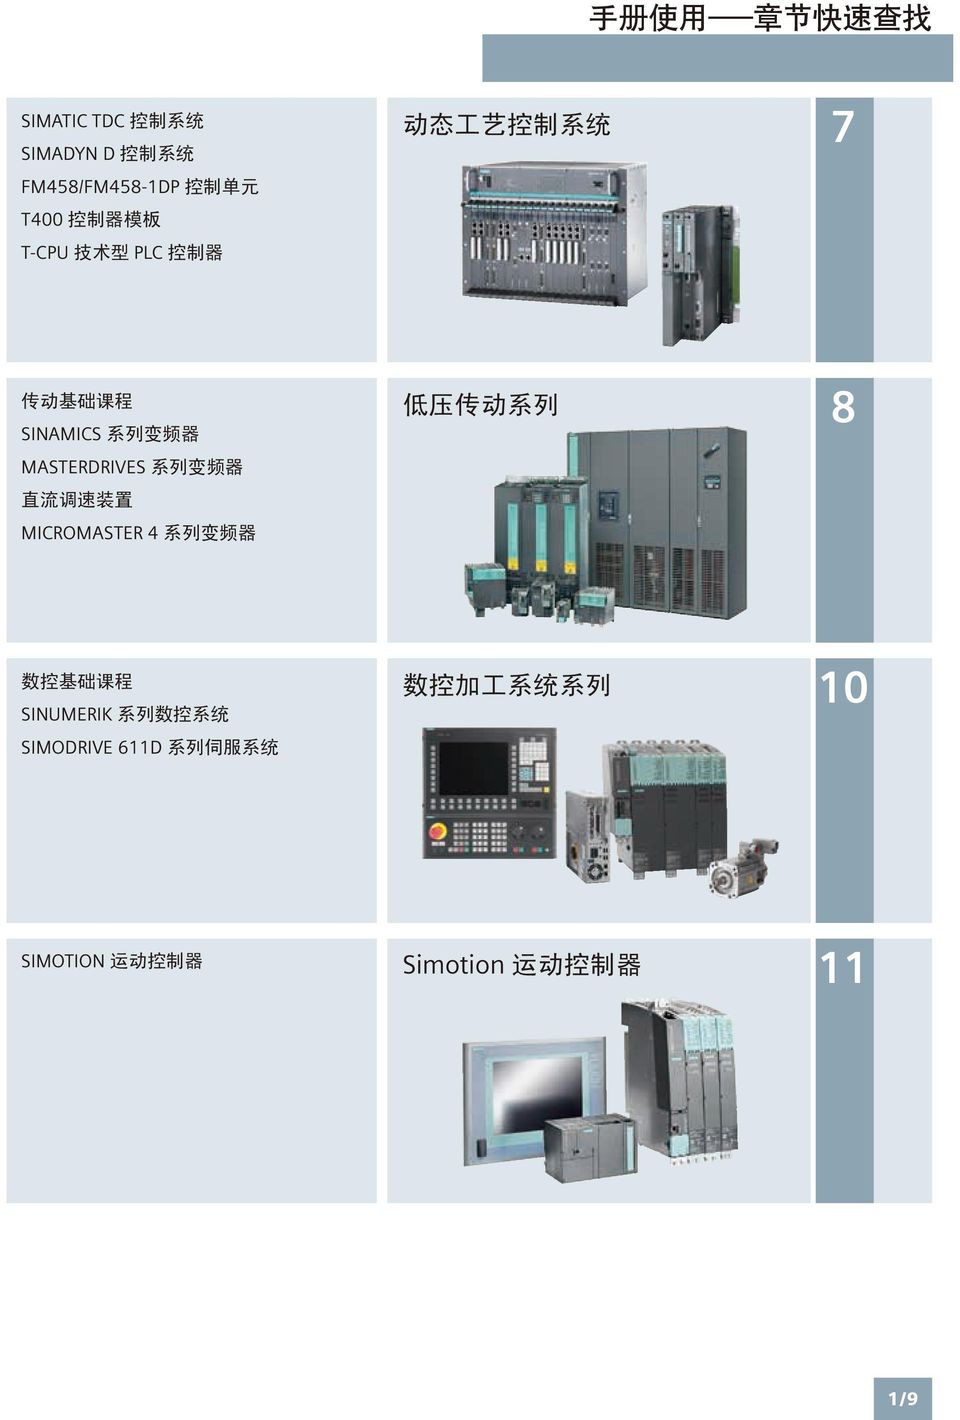 列 变 频 器 直 流 调 速 装 置 MICROMASTER 4 系 列 变 频 器 低 压 传 动 系 列 8 数 控 基 础 课 程 SINUMERIK 系 列 数 控 系